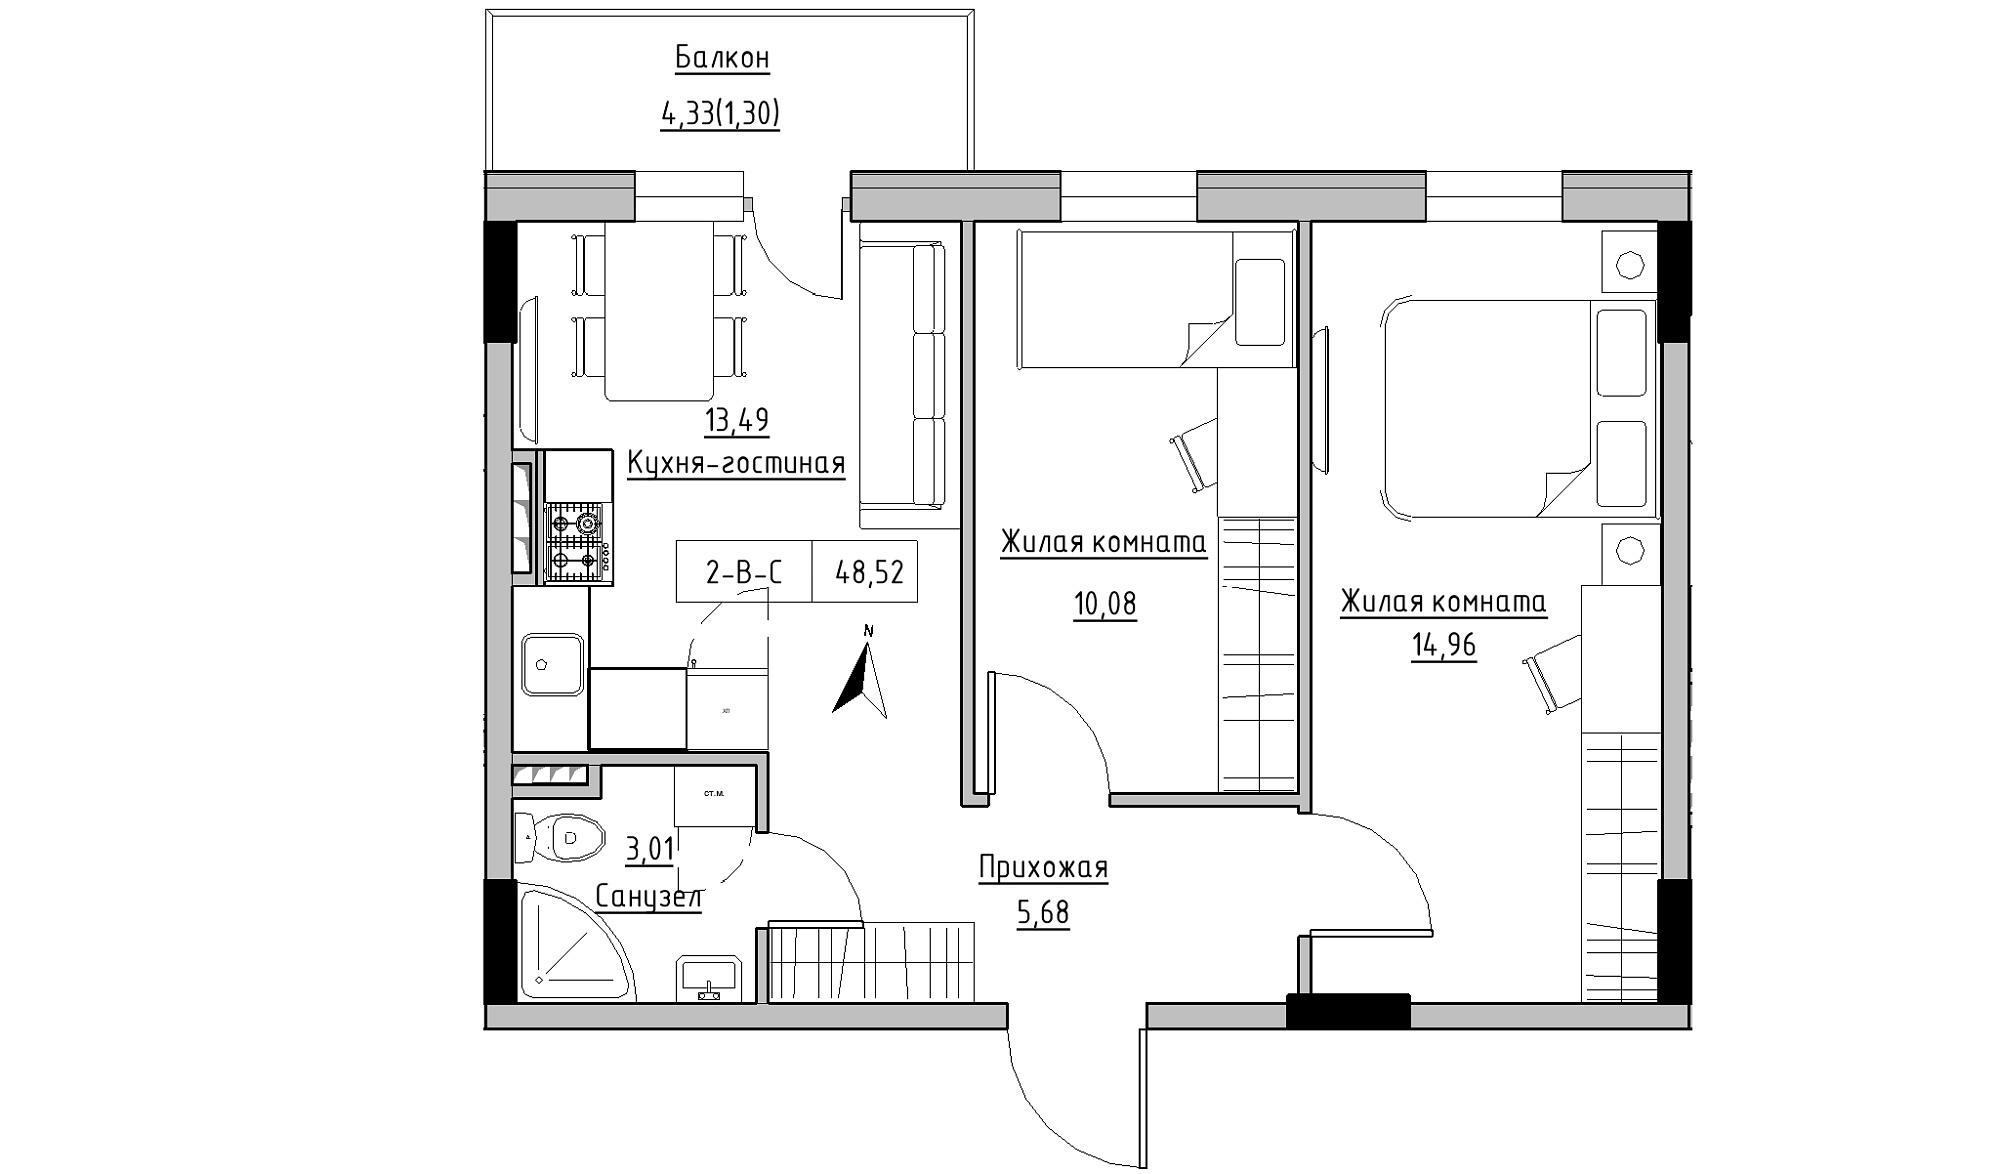 Планування 2-к квартира площею 48.52м2, KS-025-03/0009.